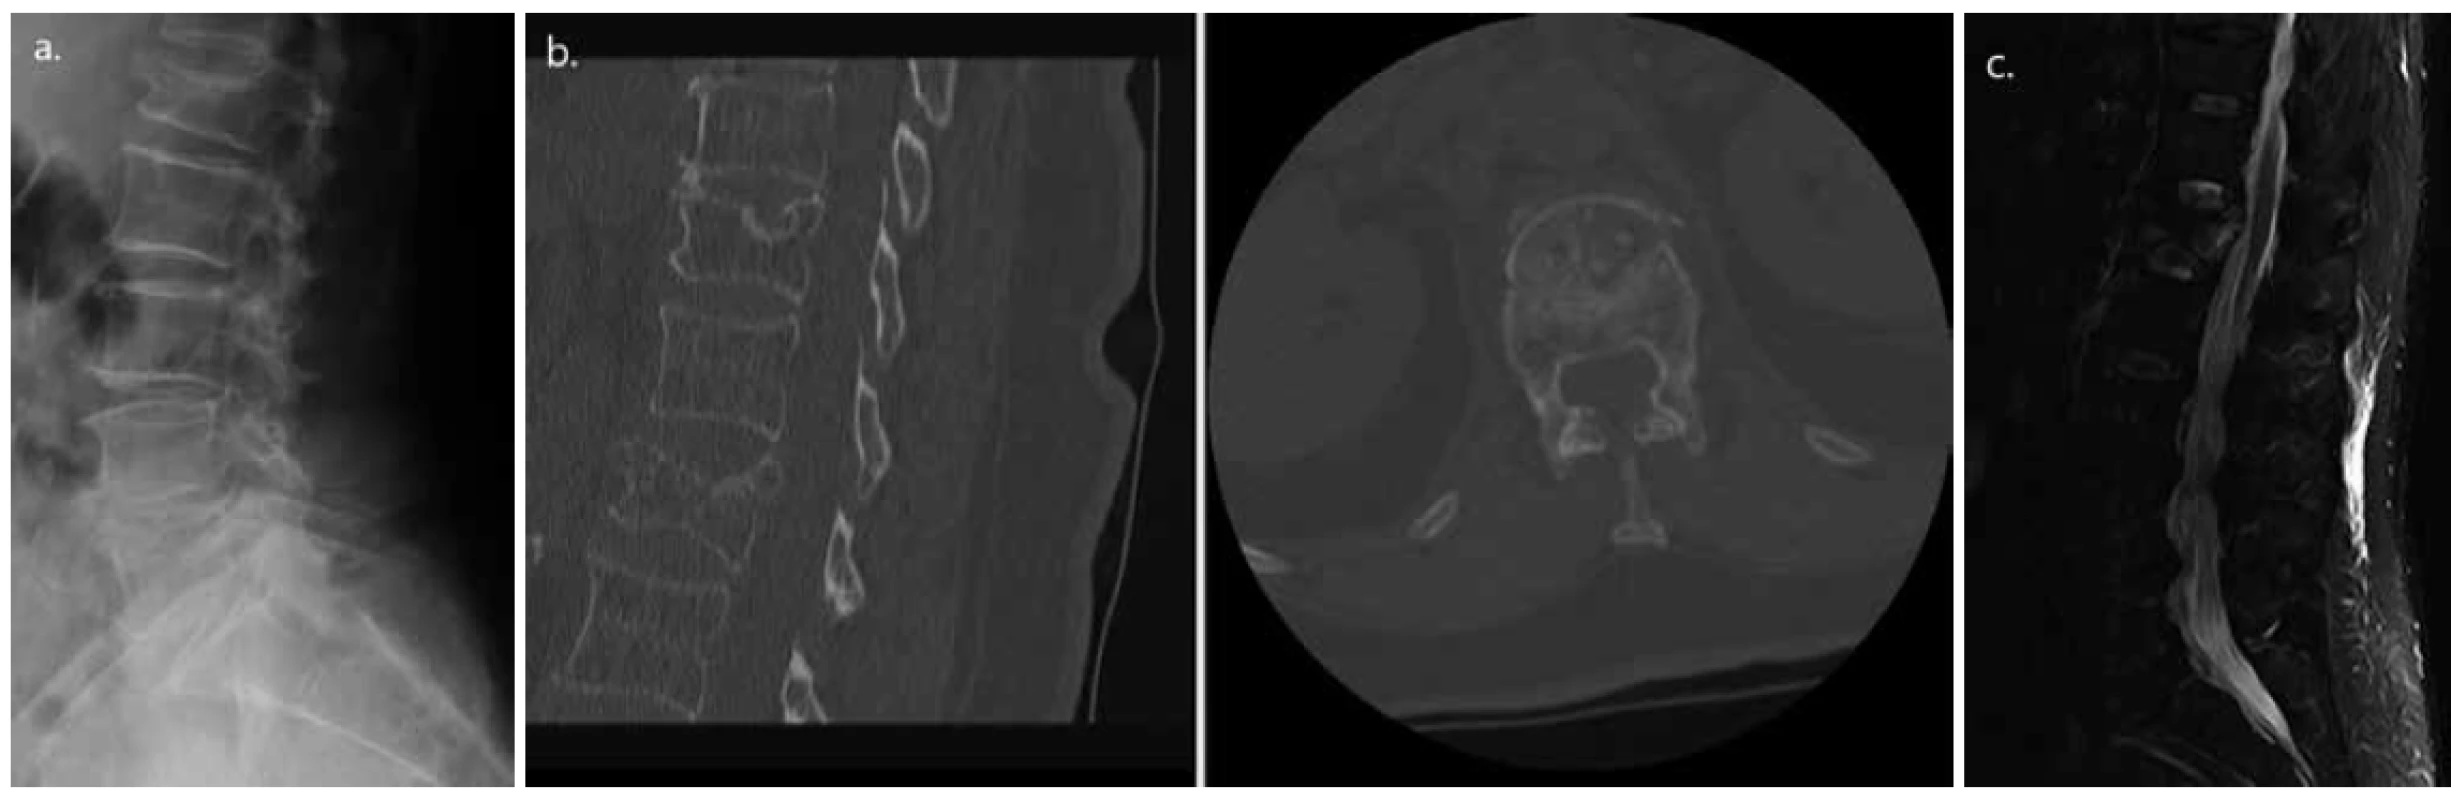 Osteoporotická komprese těla L1 charakteru kompletní tříštivé fraktury u 71leté pacientky (a. dle nativního RTG,
b. CT a c. MR)<br>
Fig. 1. Osteoporotic compression of vertebra L1, complete burst type in a 71 years old female patient (a. Native X-ray; b.
CT; and c. MRI scan)